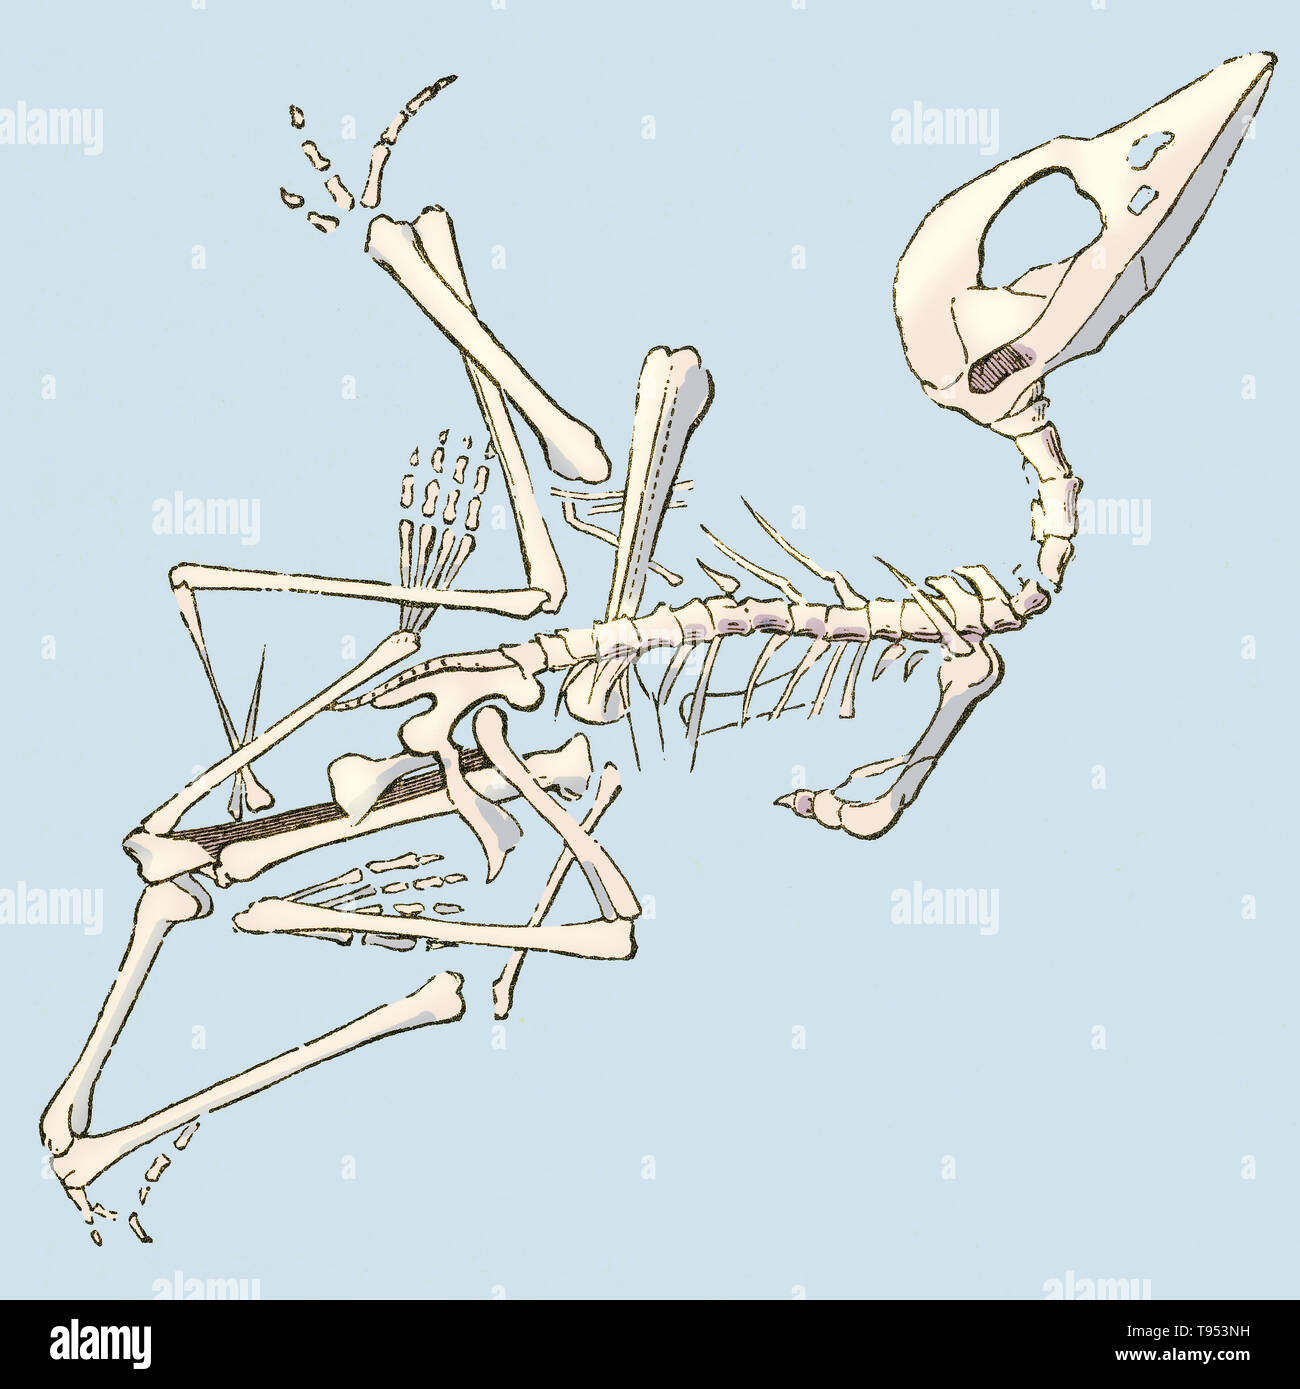 Abbildung: ein pterodactyl Fossil (Pterodactylus brevirostris), von Louis Figuier der Welt vor der Sintflut, 1867 American Edition. Figuier beschreibt Pterodactyls als ''halb Vampir, halb Woodcock, mit Zähnen des Krokodils.'' Dieses Fossil in Deutschland Solenhofen Kalksteine entdeckt wurde. Stockfoto